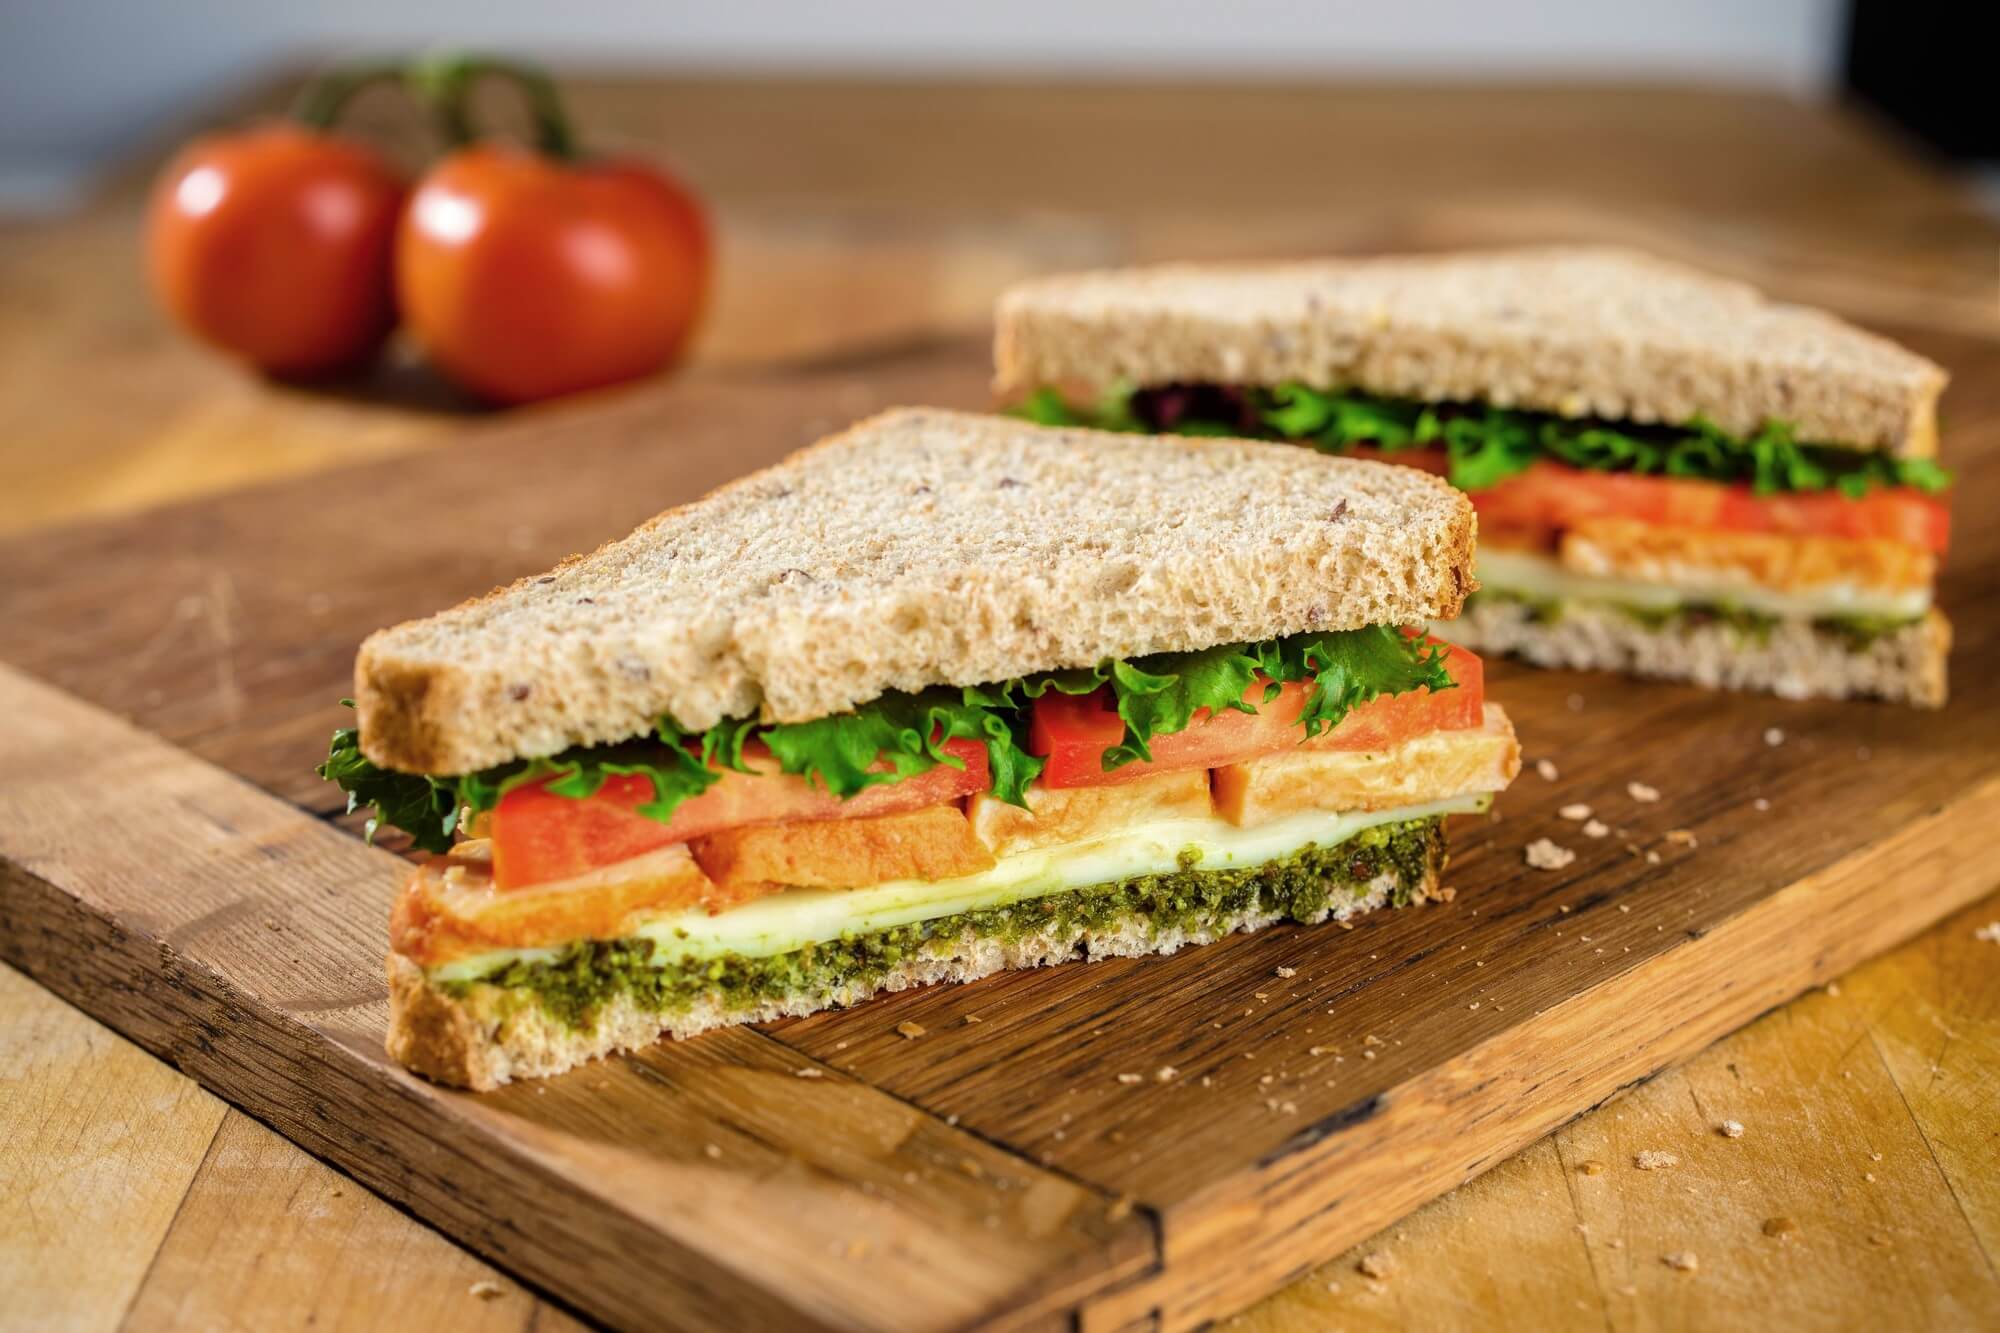 Cách làm bánh mì sandwich kẹp trứng thơm ngon bổ dưỡng